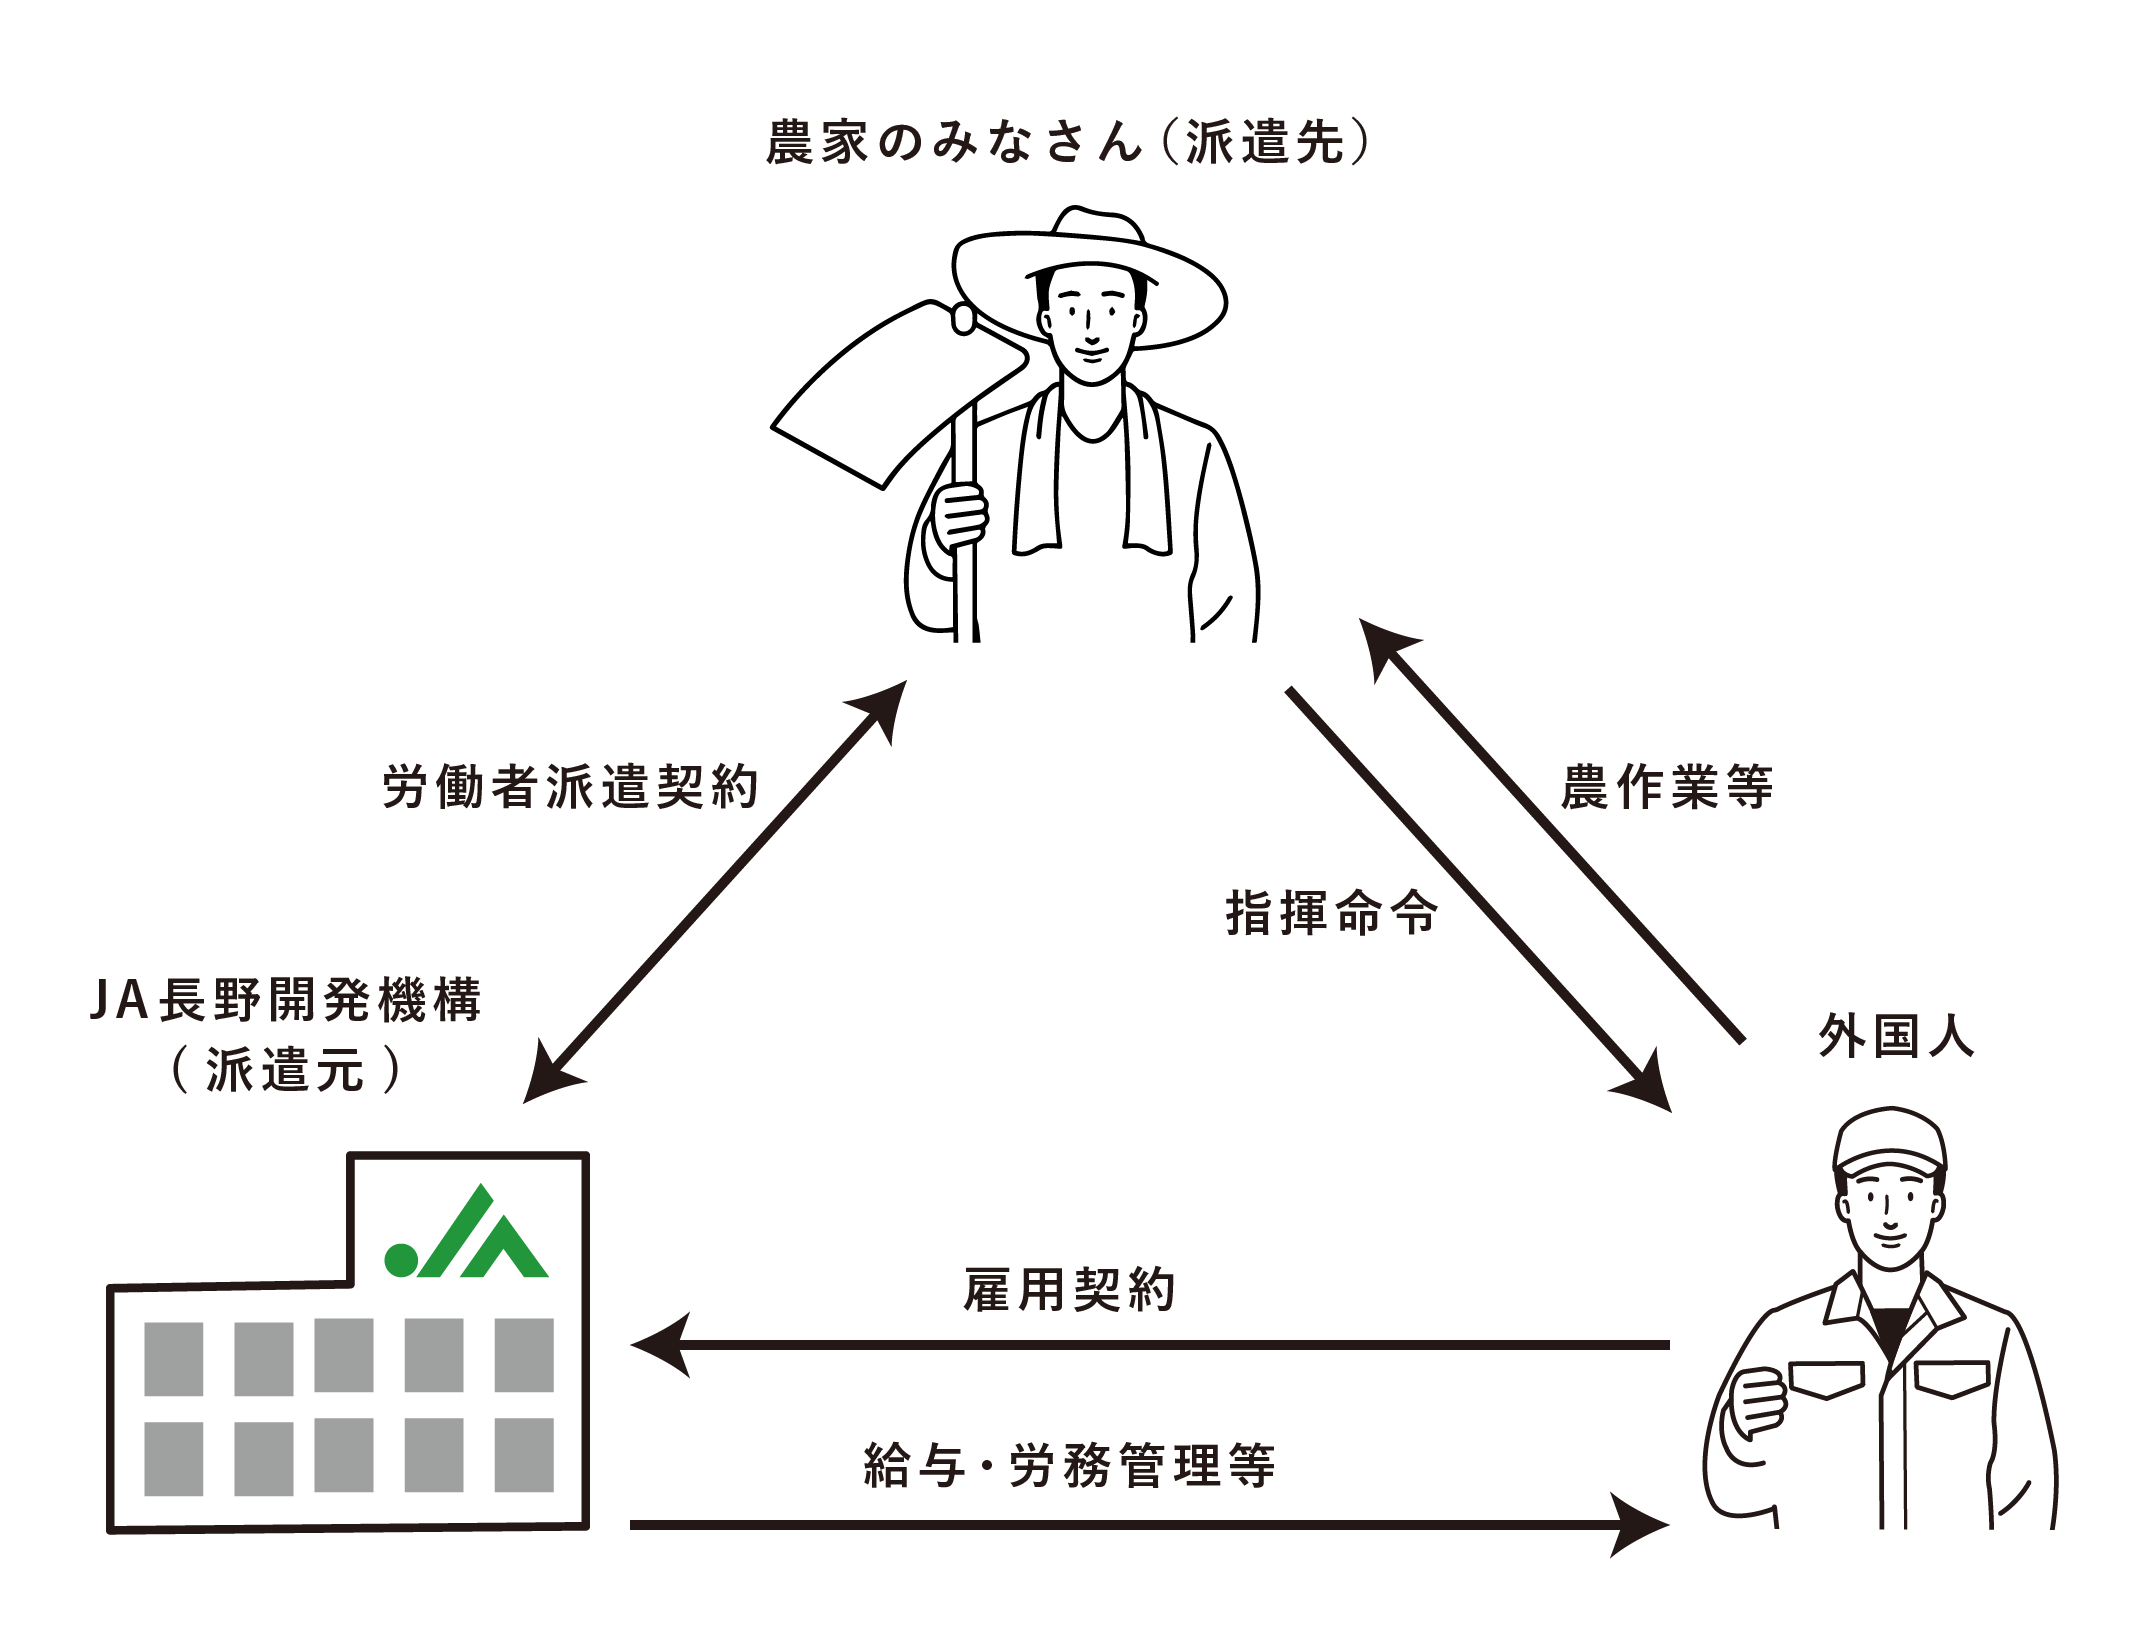 農家の皆さん、JA長野開発機構、外国人の関係図